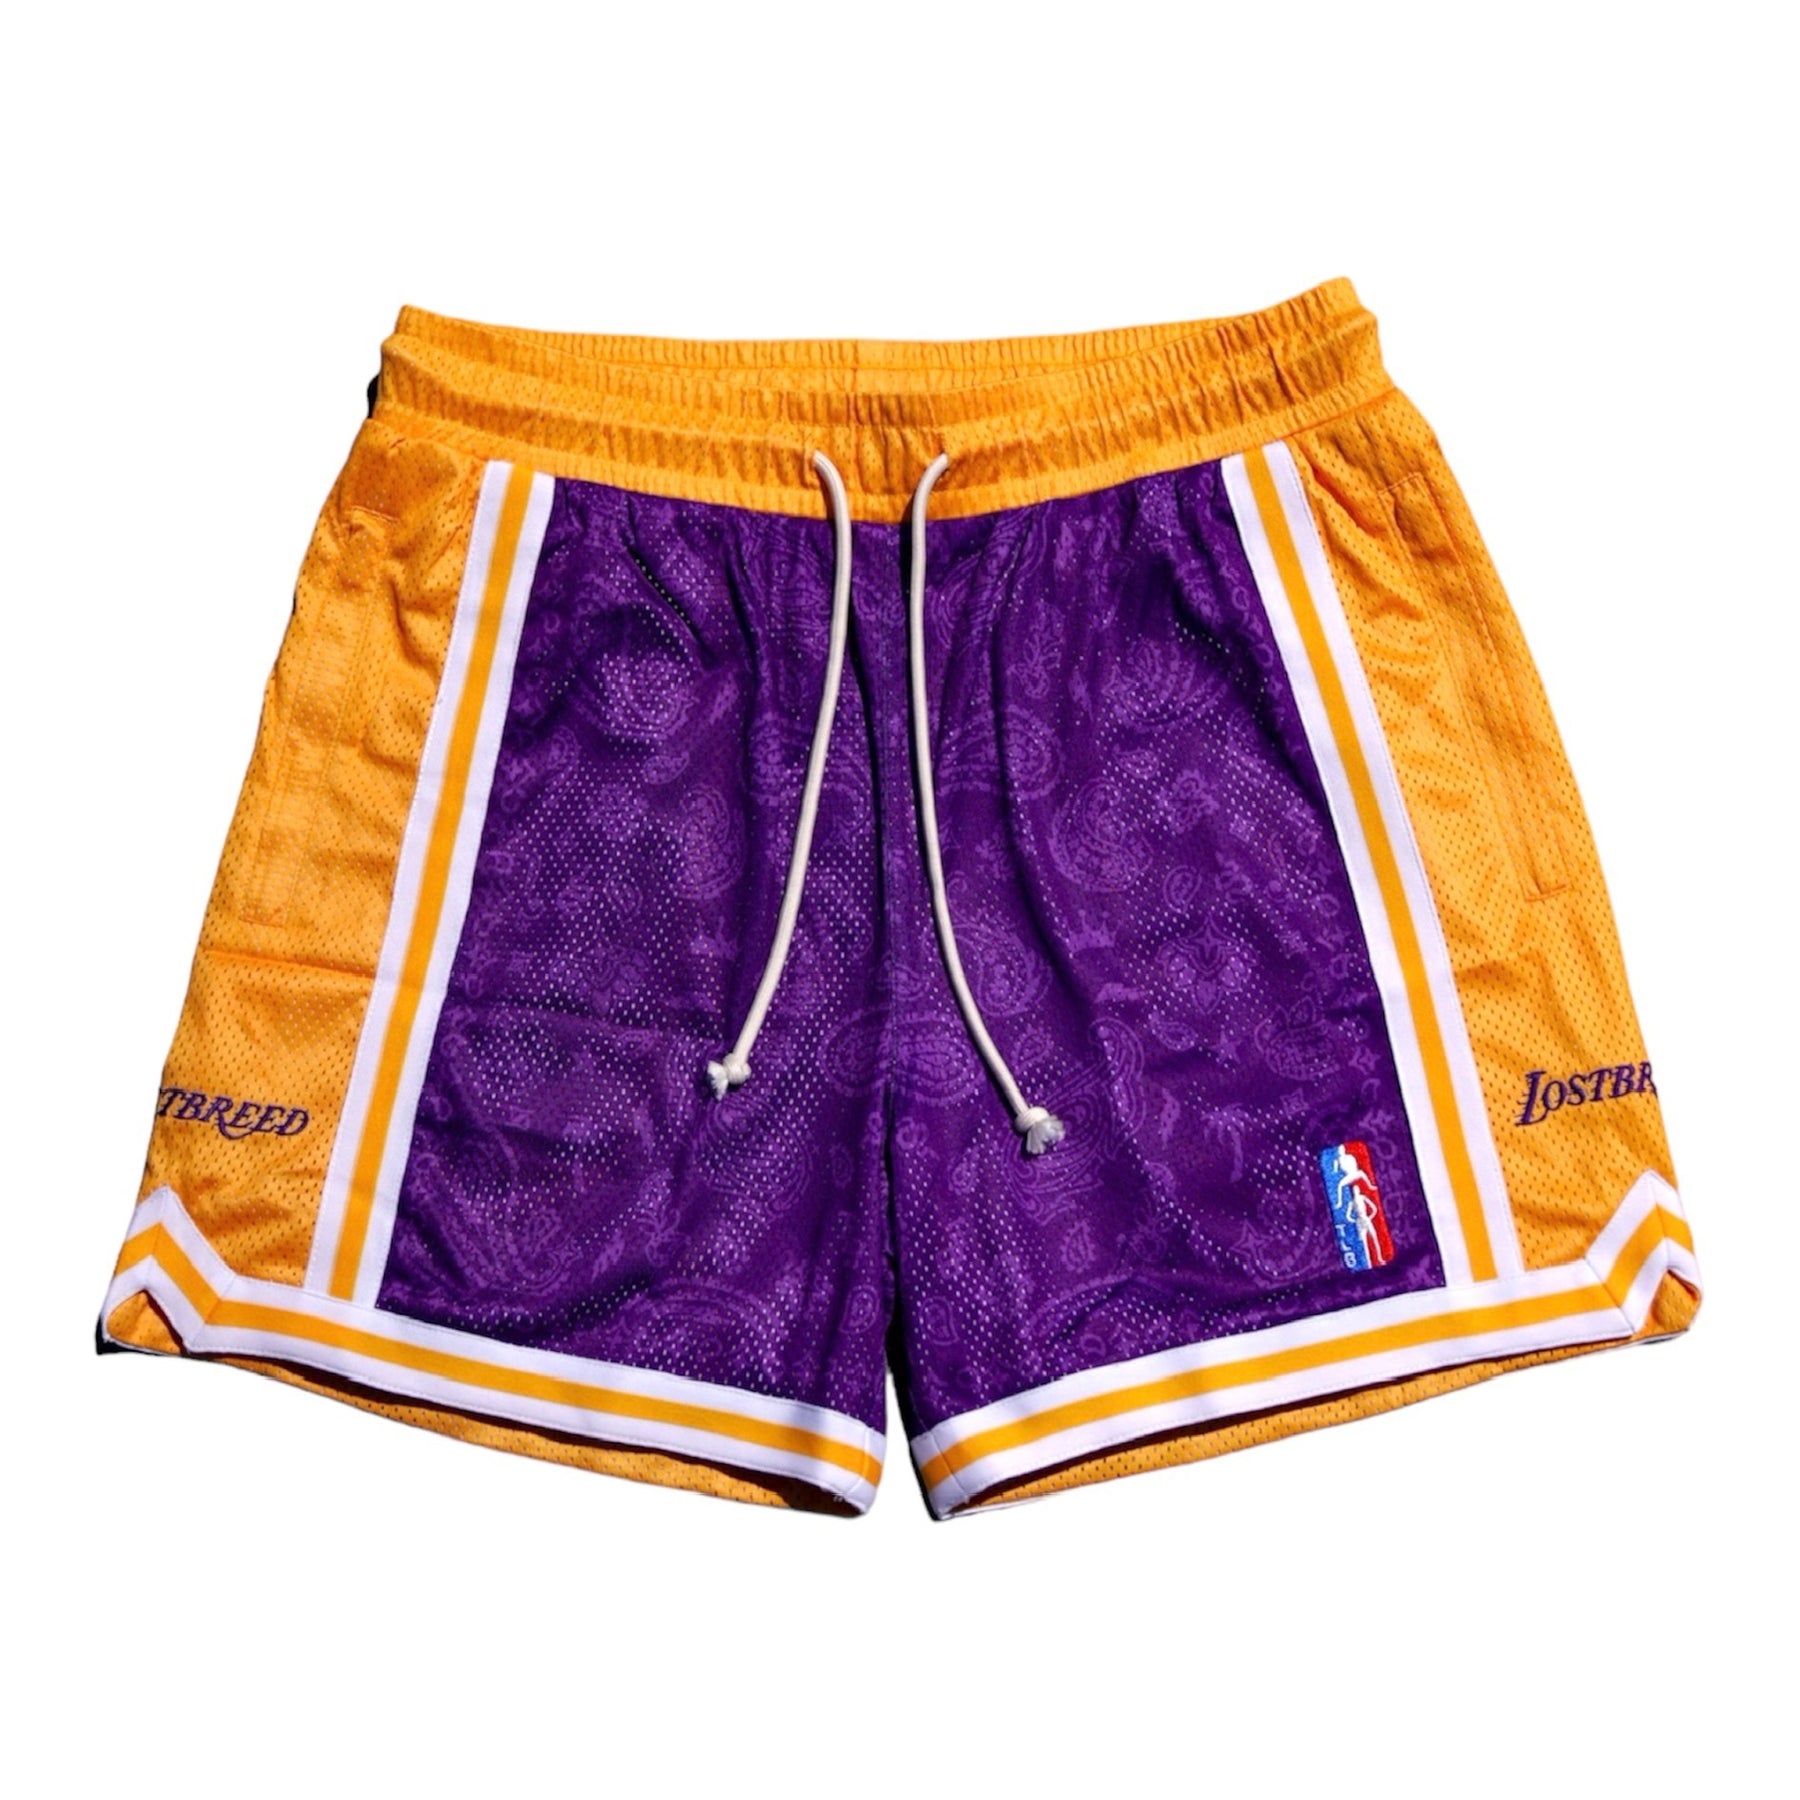 Lakers Shorts 